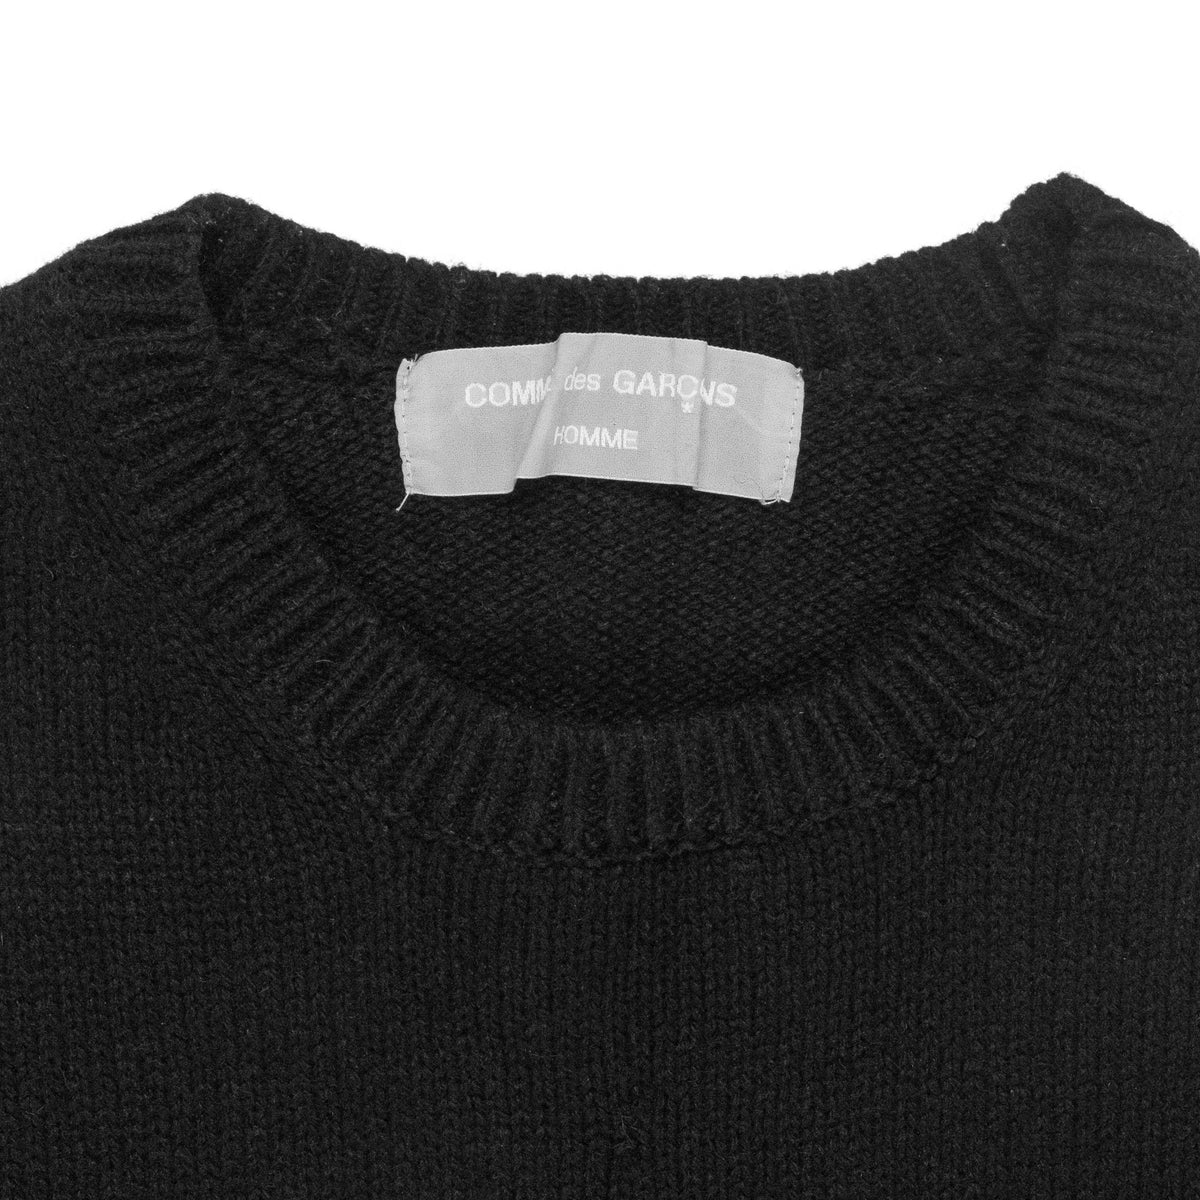 Comme des Garçons Homme Black Knit Sweater – SILVER LEAGUE